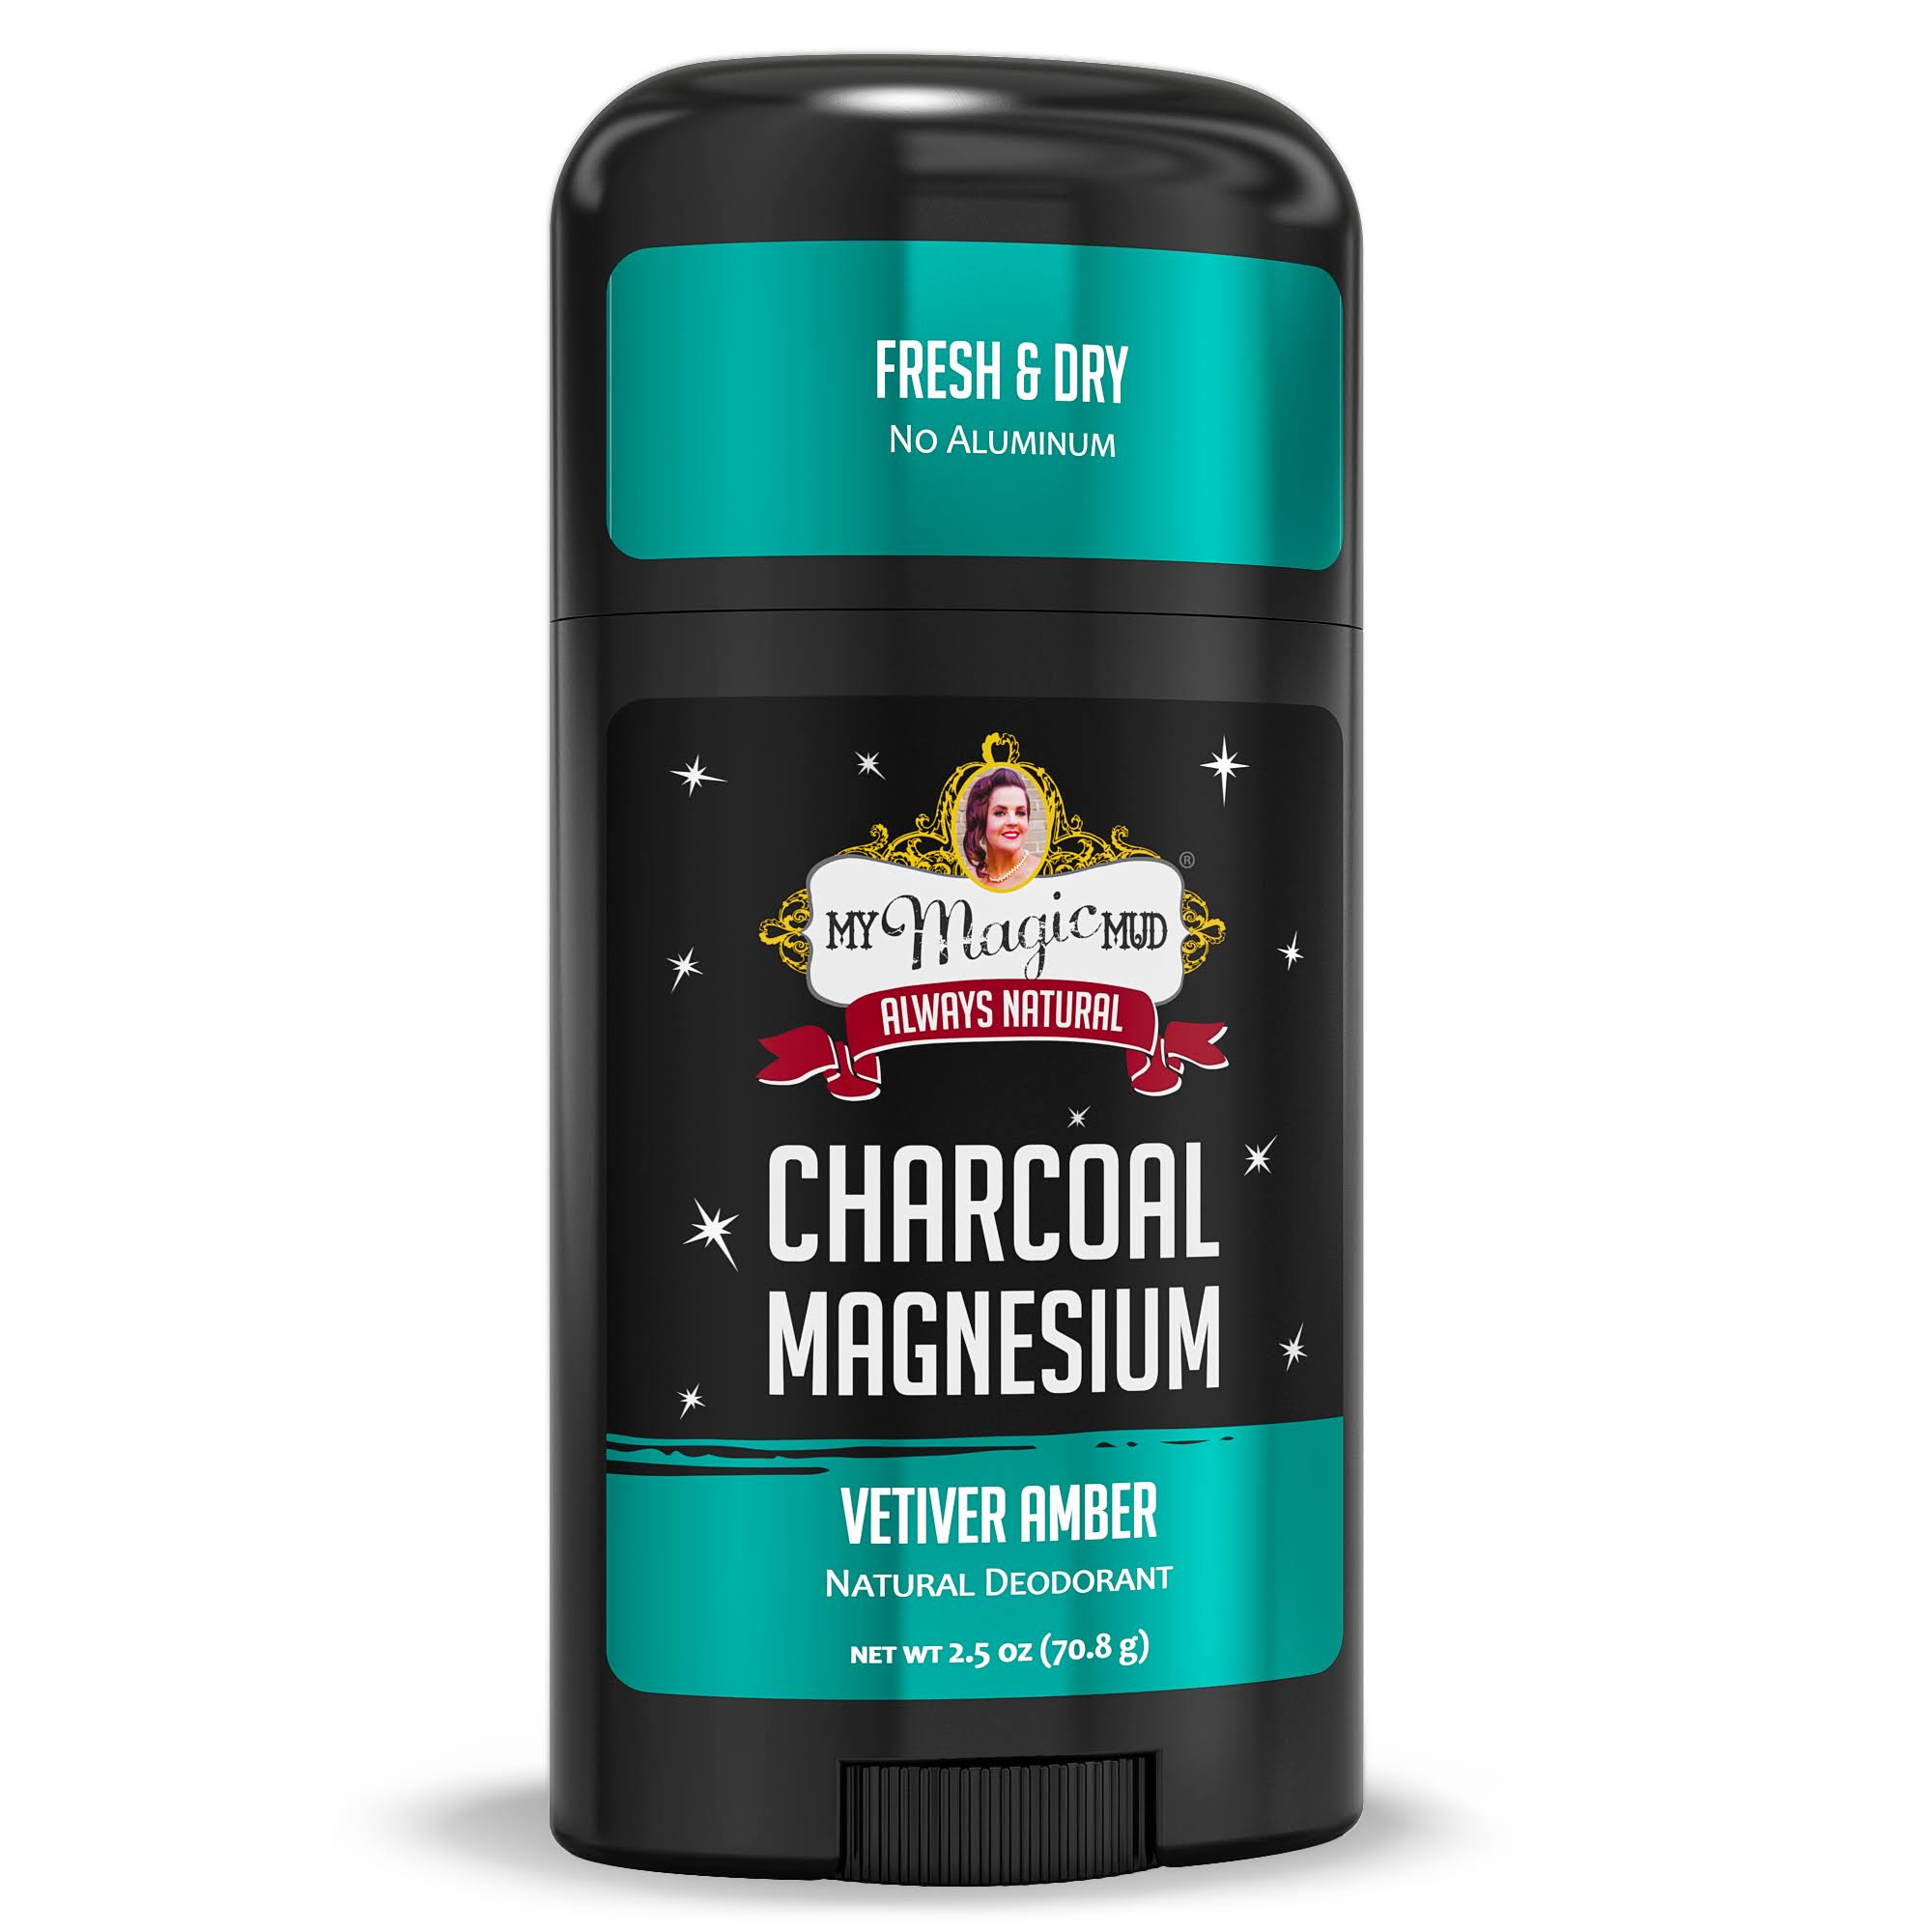 Charcoal Magnesium Natural Deodorant, Vetiver Amber